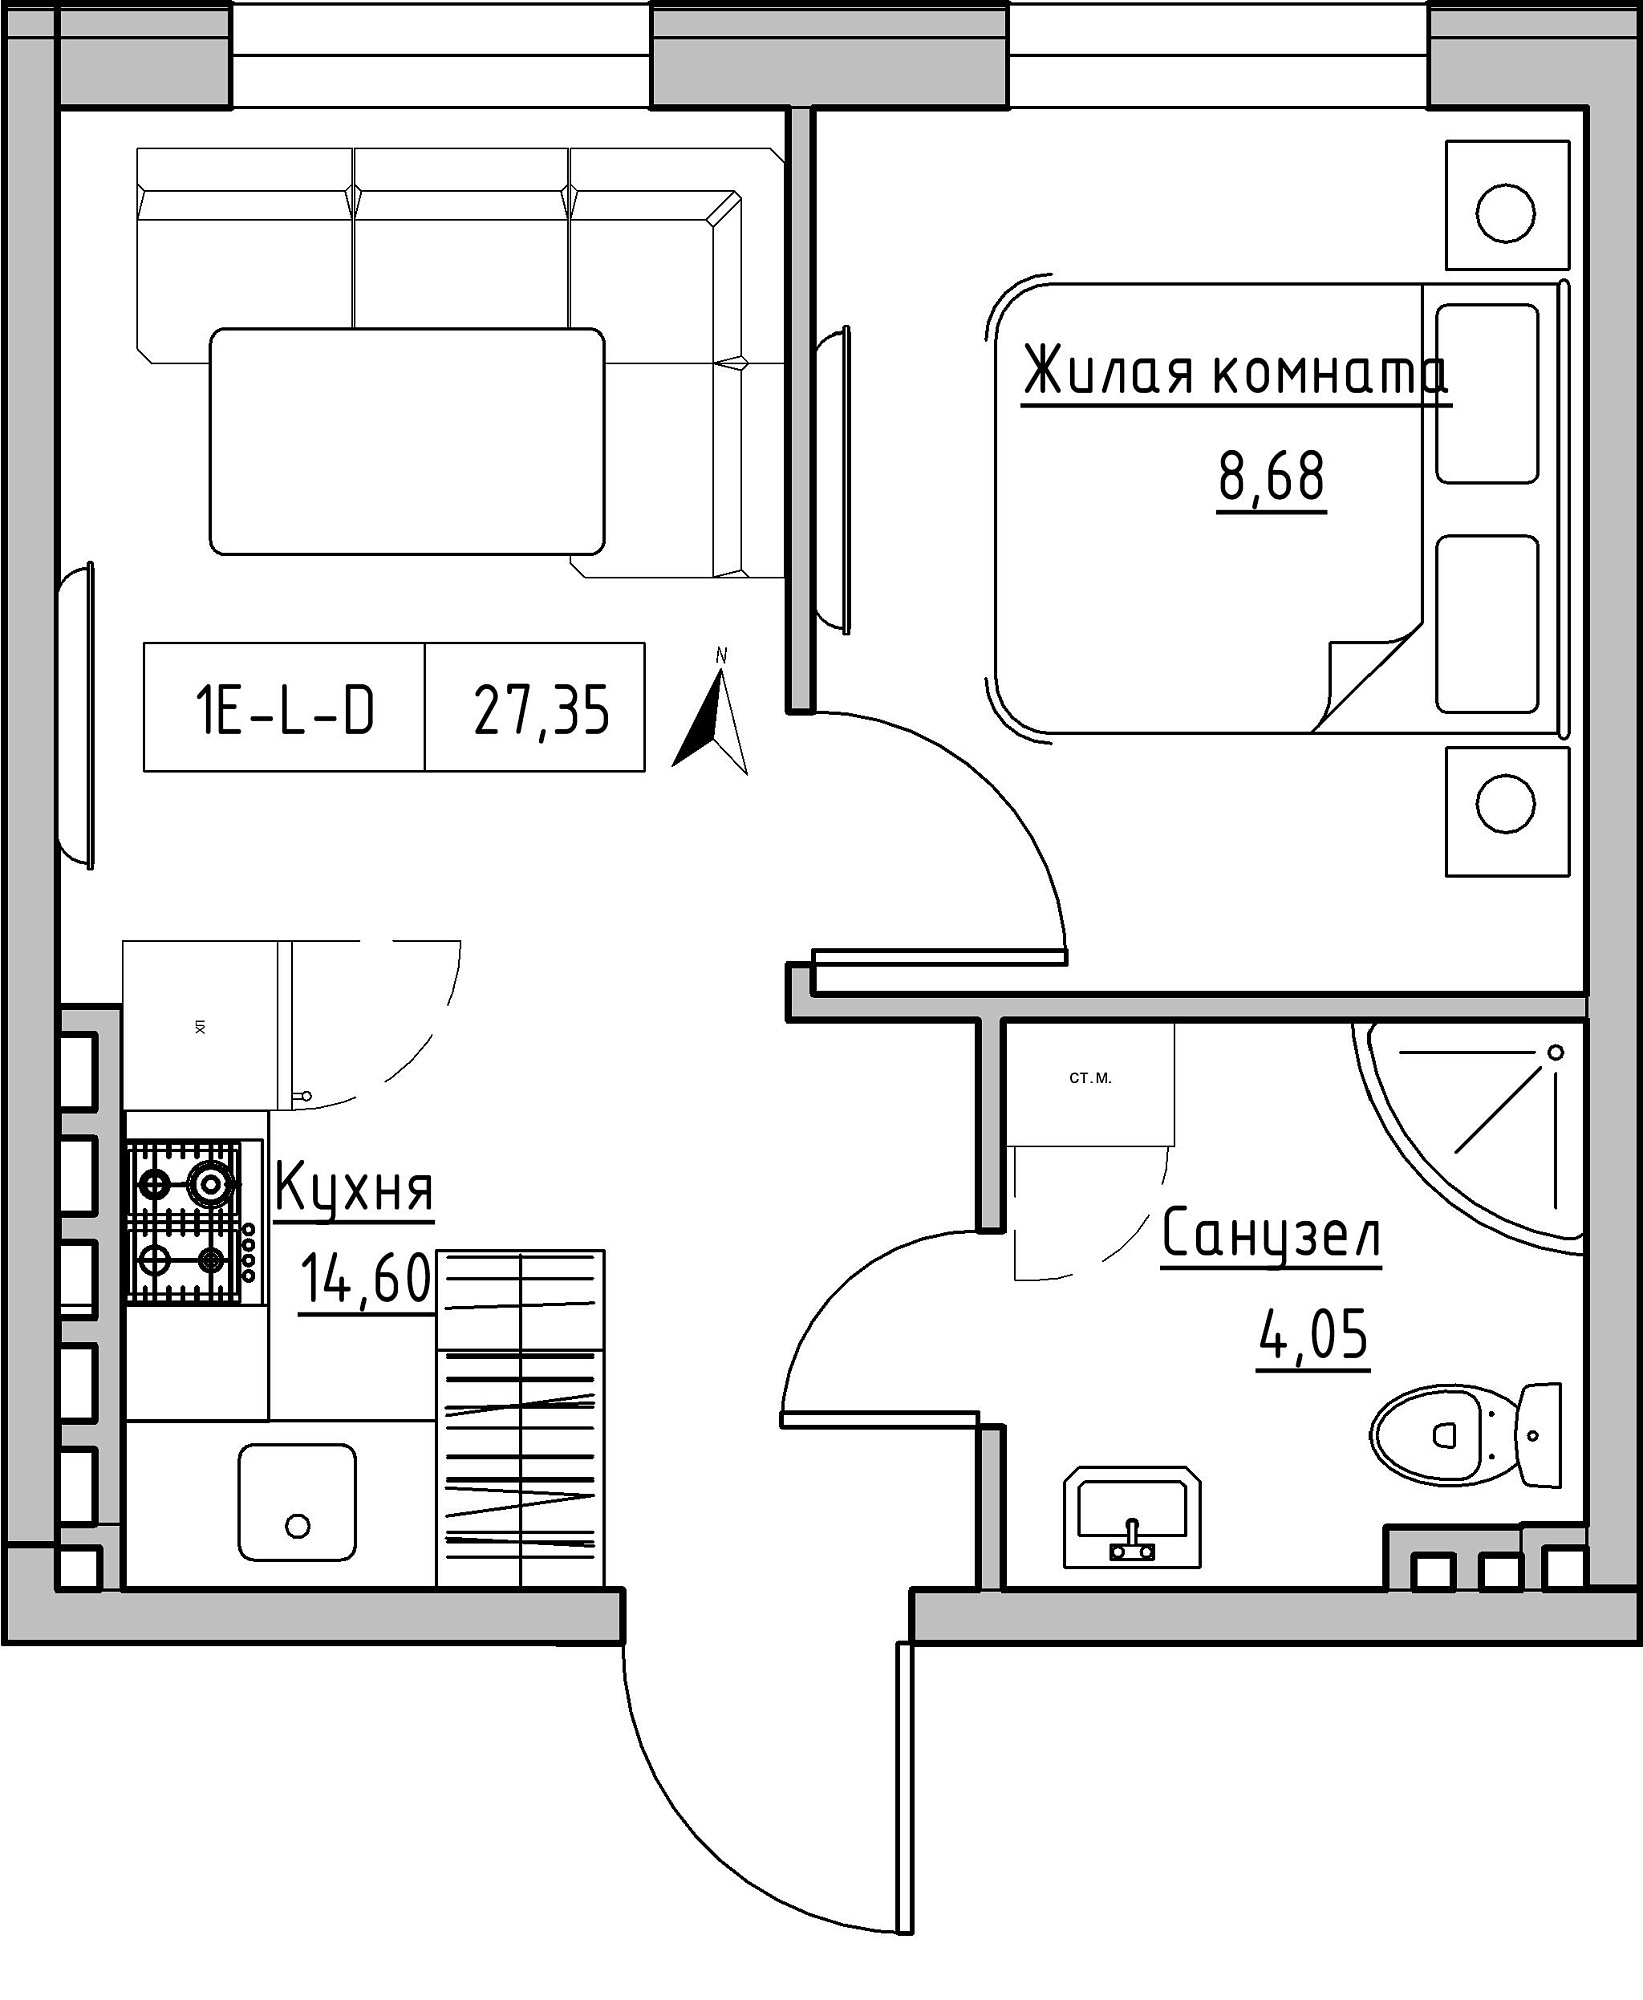 Планування 1-к квартира площею 27.35м2, KS-024-05/0002.